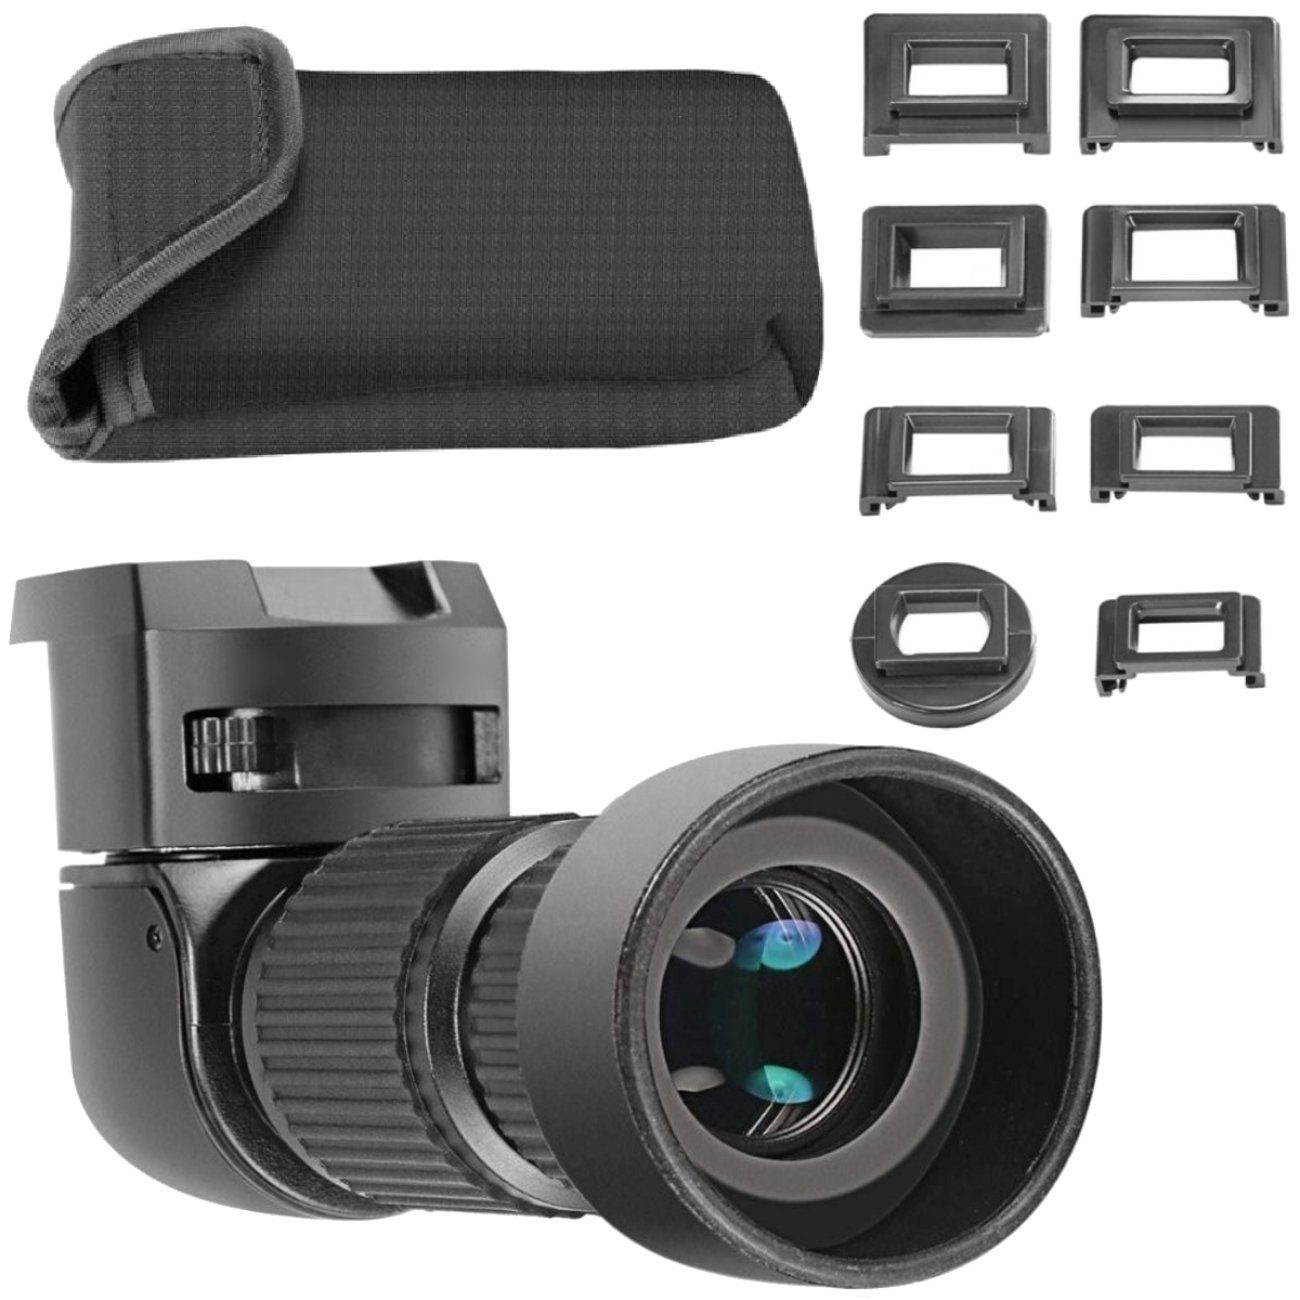 Impulsfoto Aufstecksucher Winkelsucher Viewfinder 1,0 - 3,2-fach für DSLR Kameras